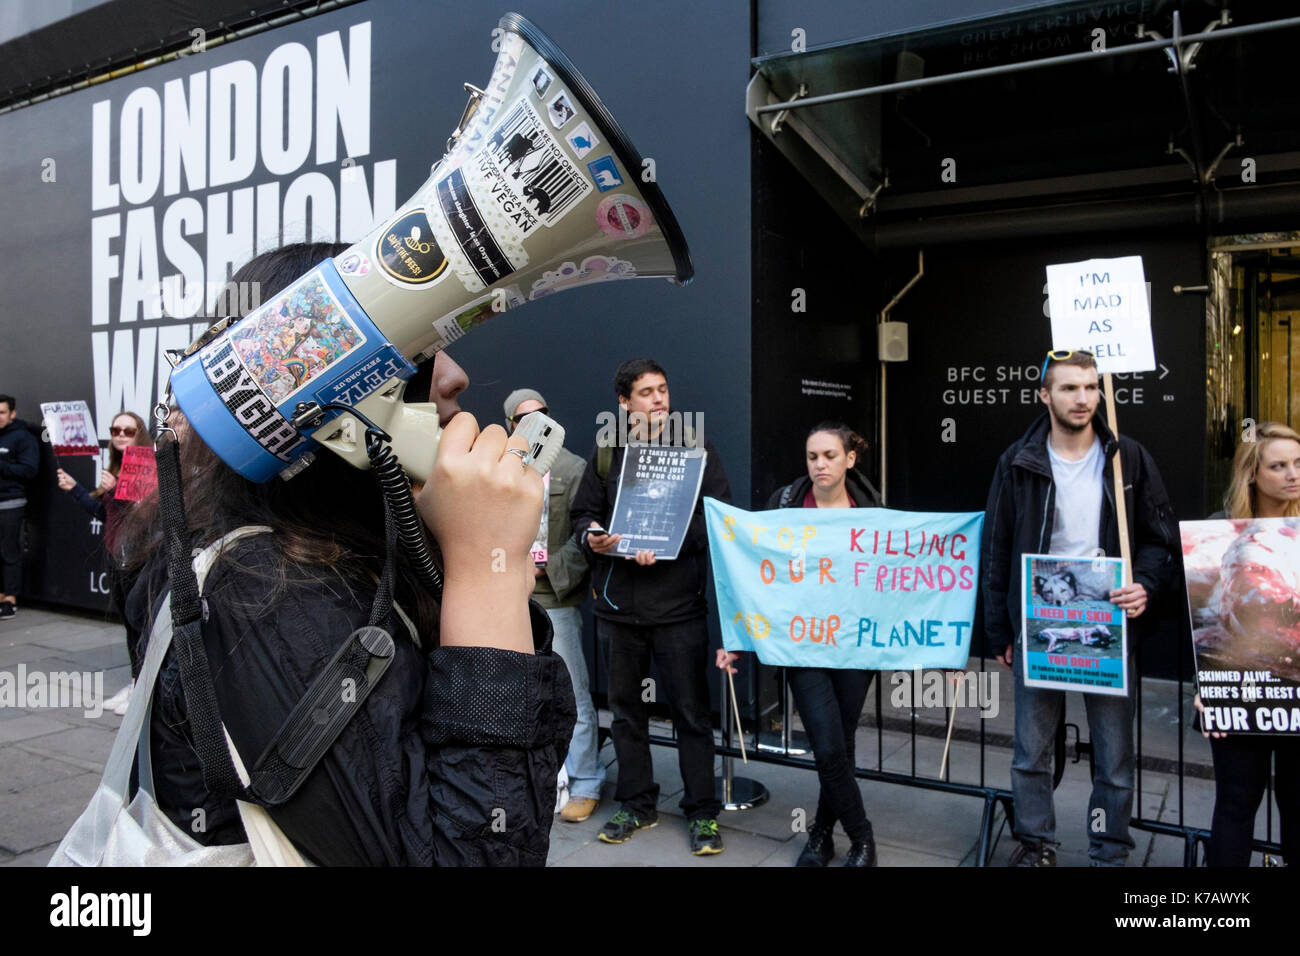 Londra, Regno Unito. 15 settembre 2017 attivisti per i diritti degli animali protesta al di fuori della sede per la London Fashion Week all'uso di pelo di animali nel settore moda Foto Stock